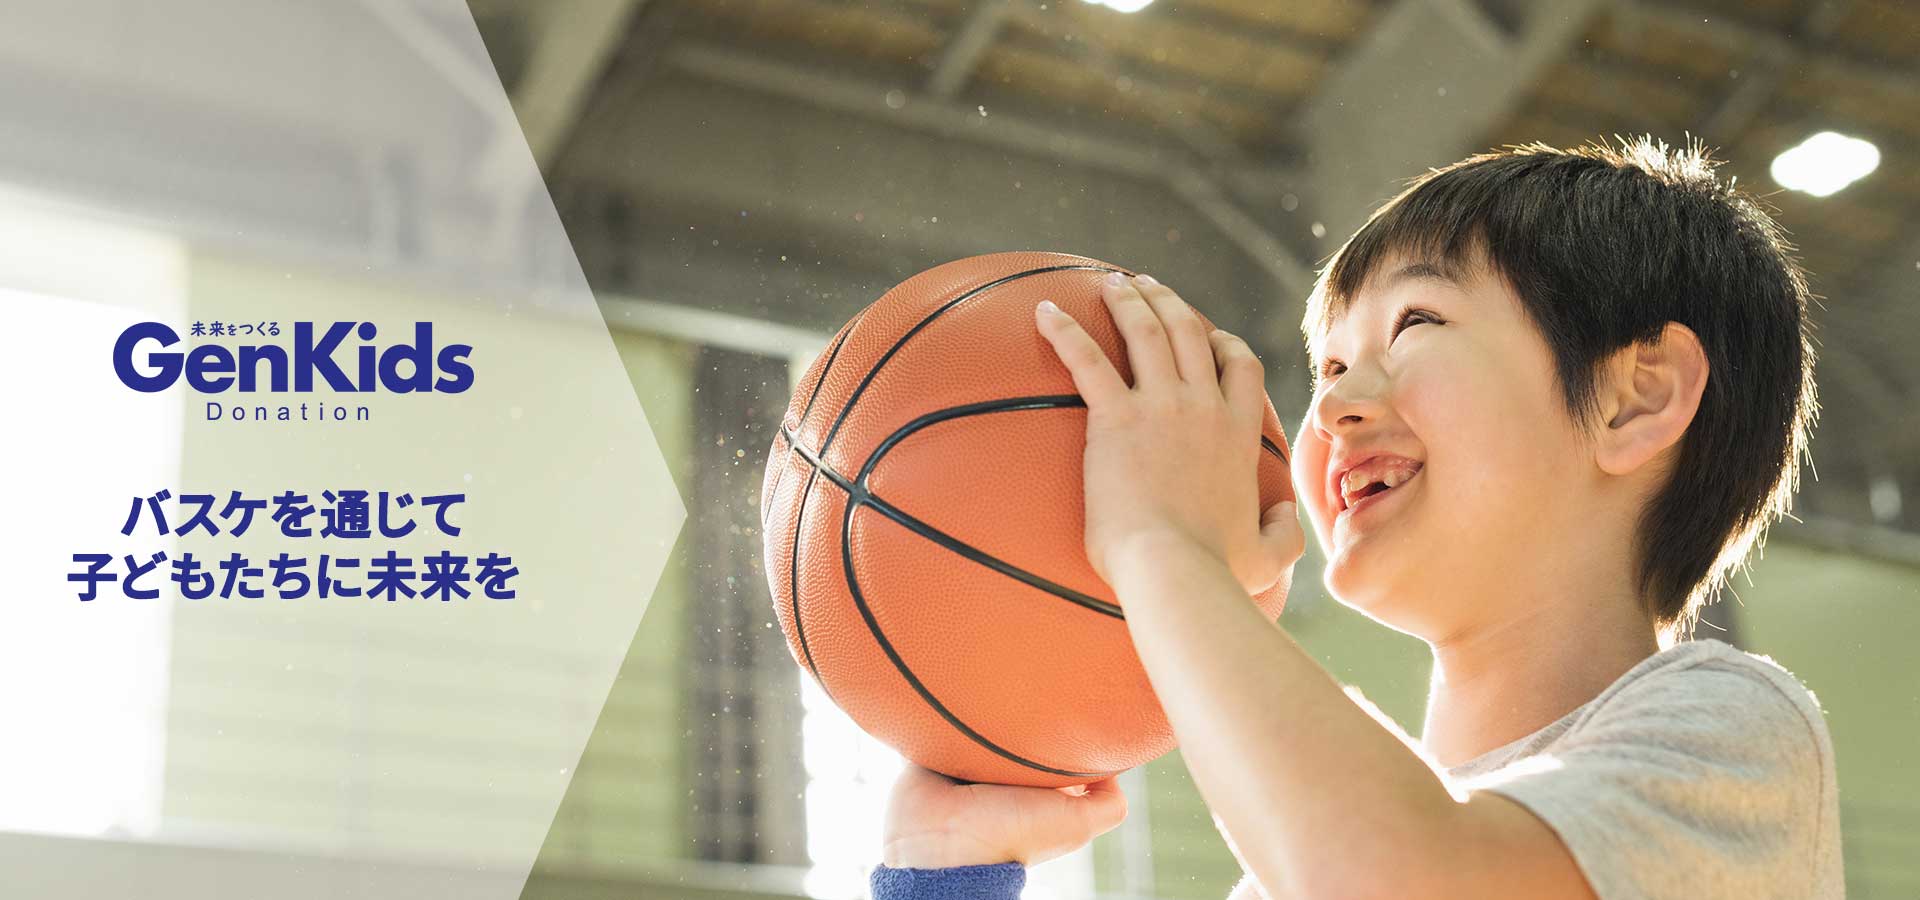 「バスケを通じて子どもたちに未来を」ゲンキッズドネーションは寄附金活動などの社会貢献活動です